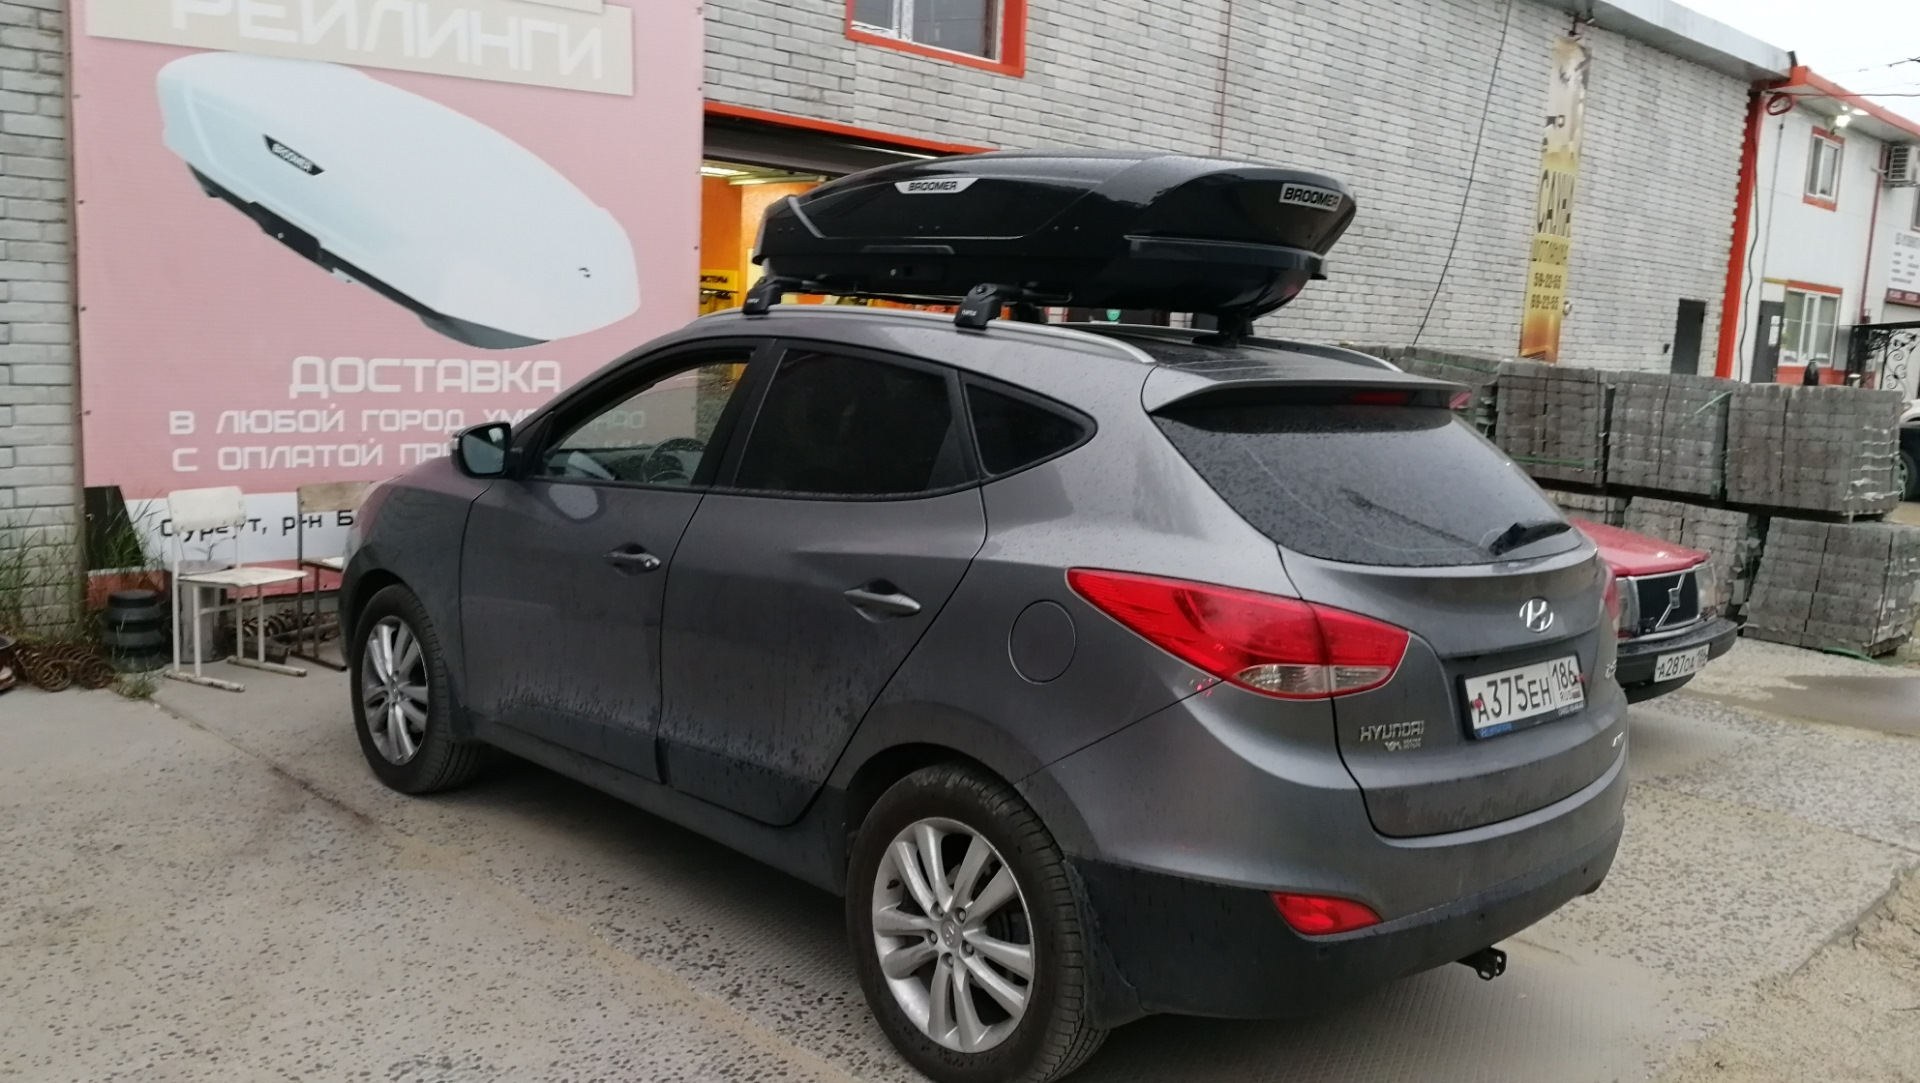 Автобокс джокер. Hyundai ix35 2014 с рейлингами. Багажник бокс для Хендай ix35. Багажник на крышу Хендай ix35 с рейлингами. Hyundai ix35 интегрированные рейлинги.